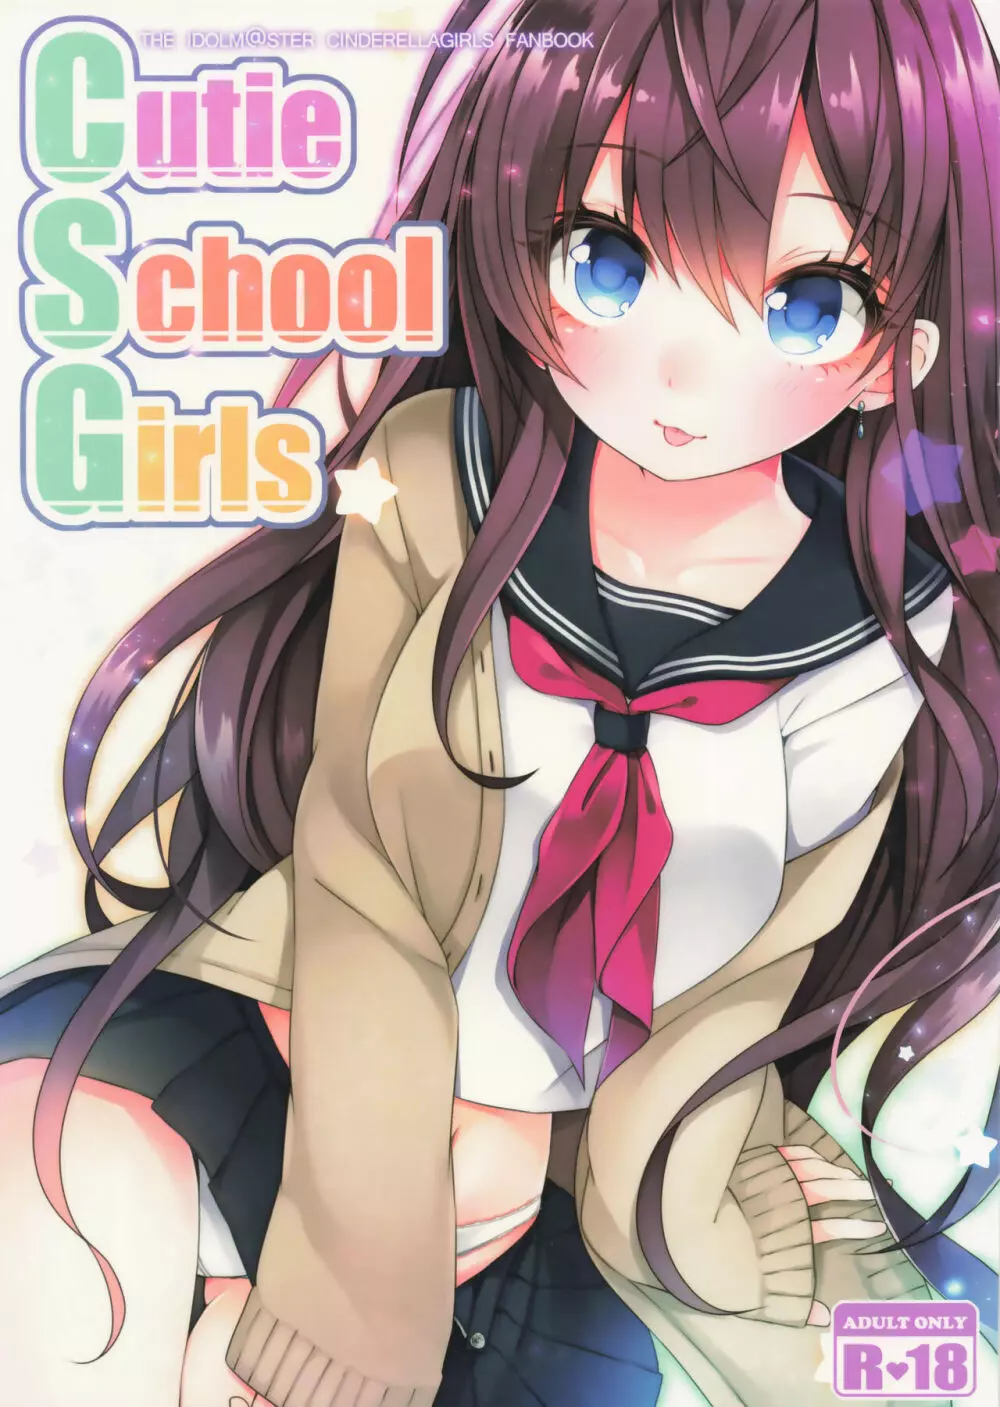 Cutie School Girls 1ページ